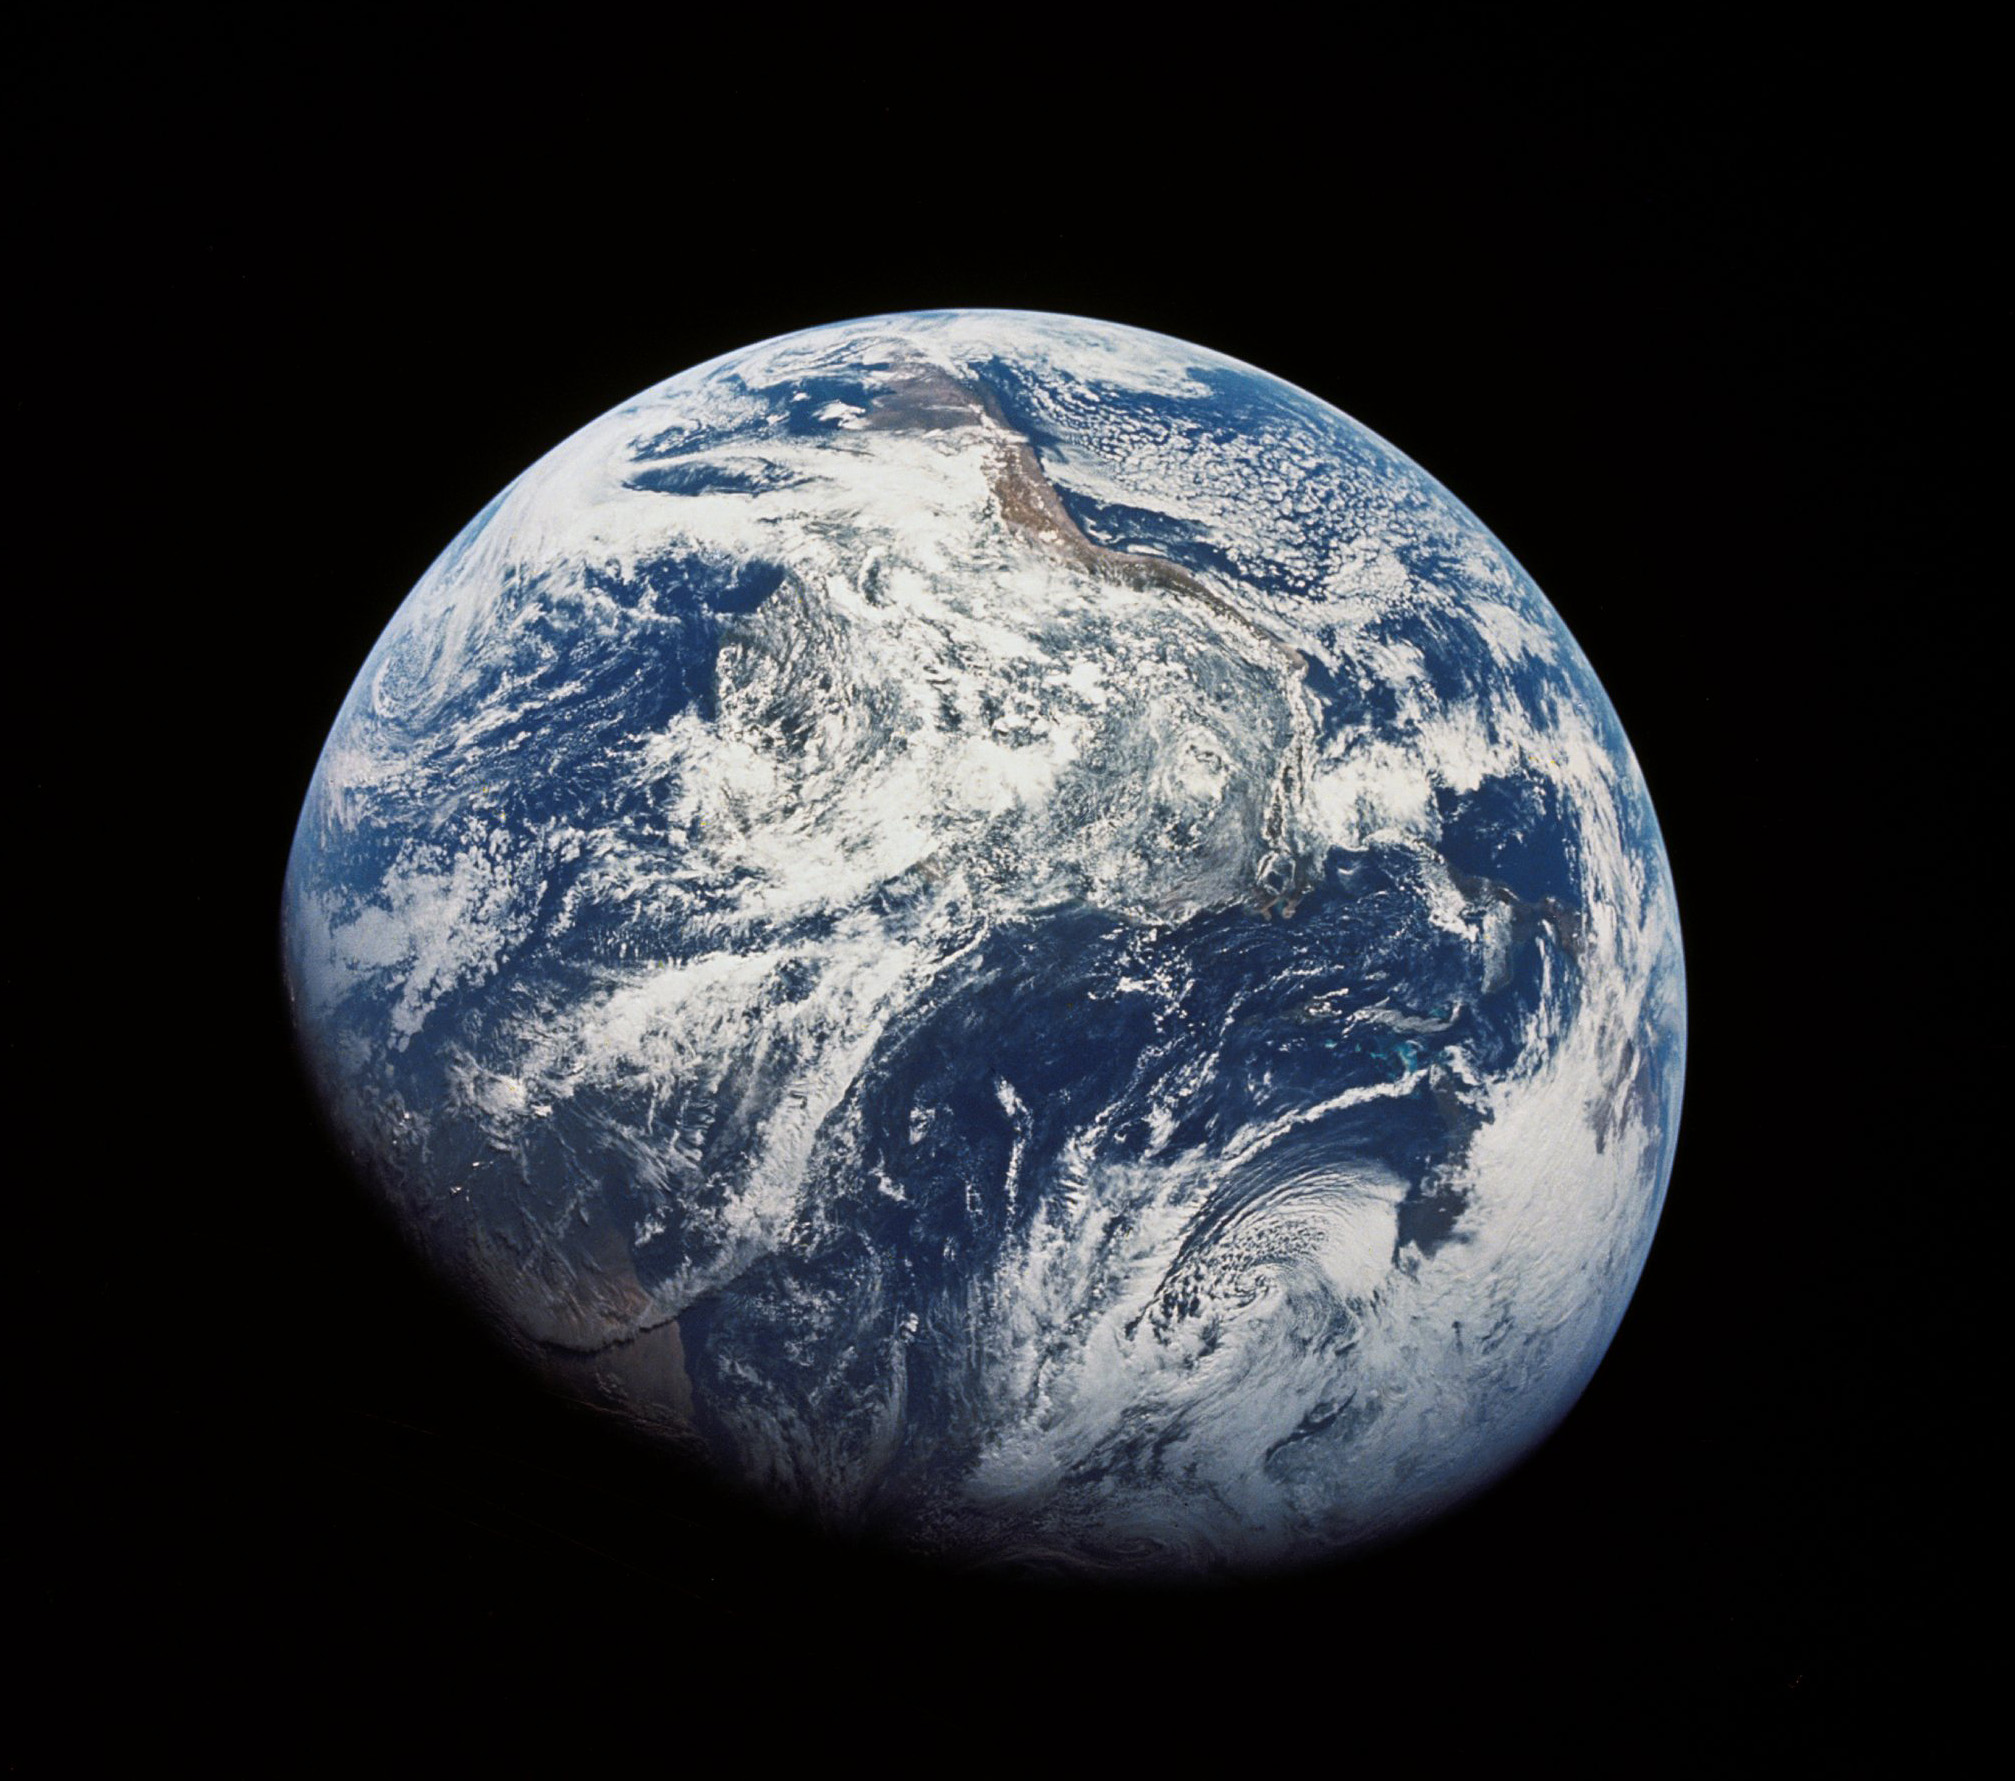 2 宇宙風景画像 31枚 地球型惑星 地球 衛星 月 Iss ハッブル宇宙望遠鏡 写真 壁紙 風景と少女による可能世界